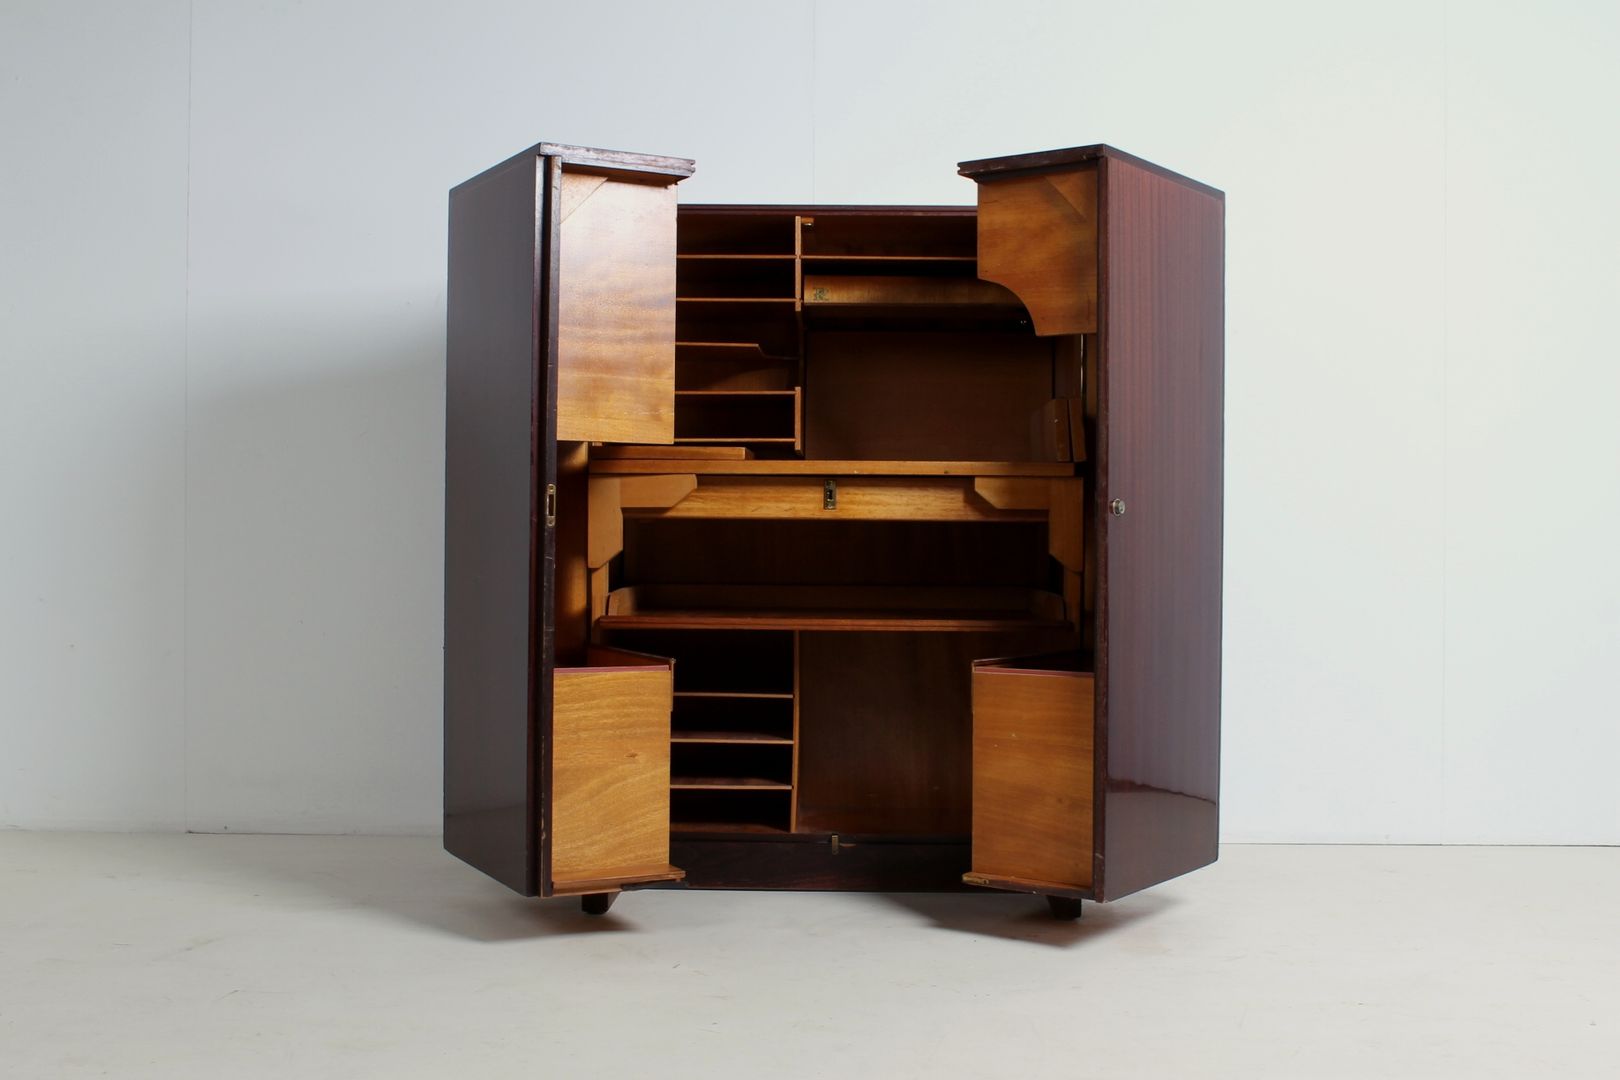 Möbel/Schreibbüro von Mummenthaler & Meier., func. functional furniture func. functional furniture Study/office Desks